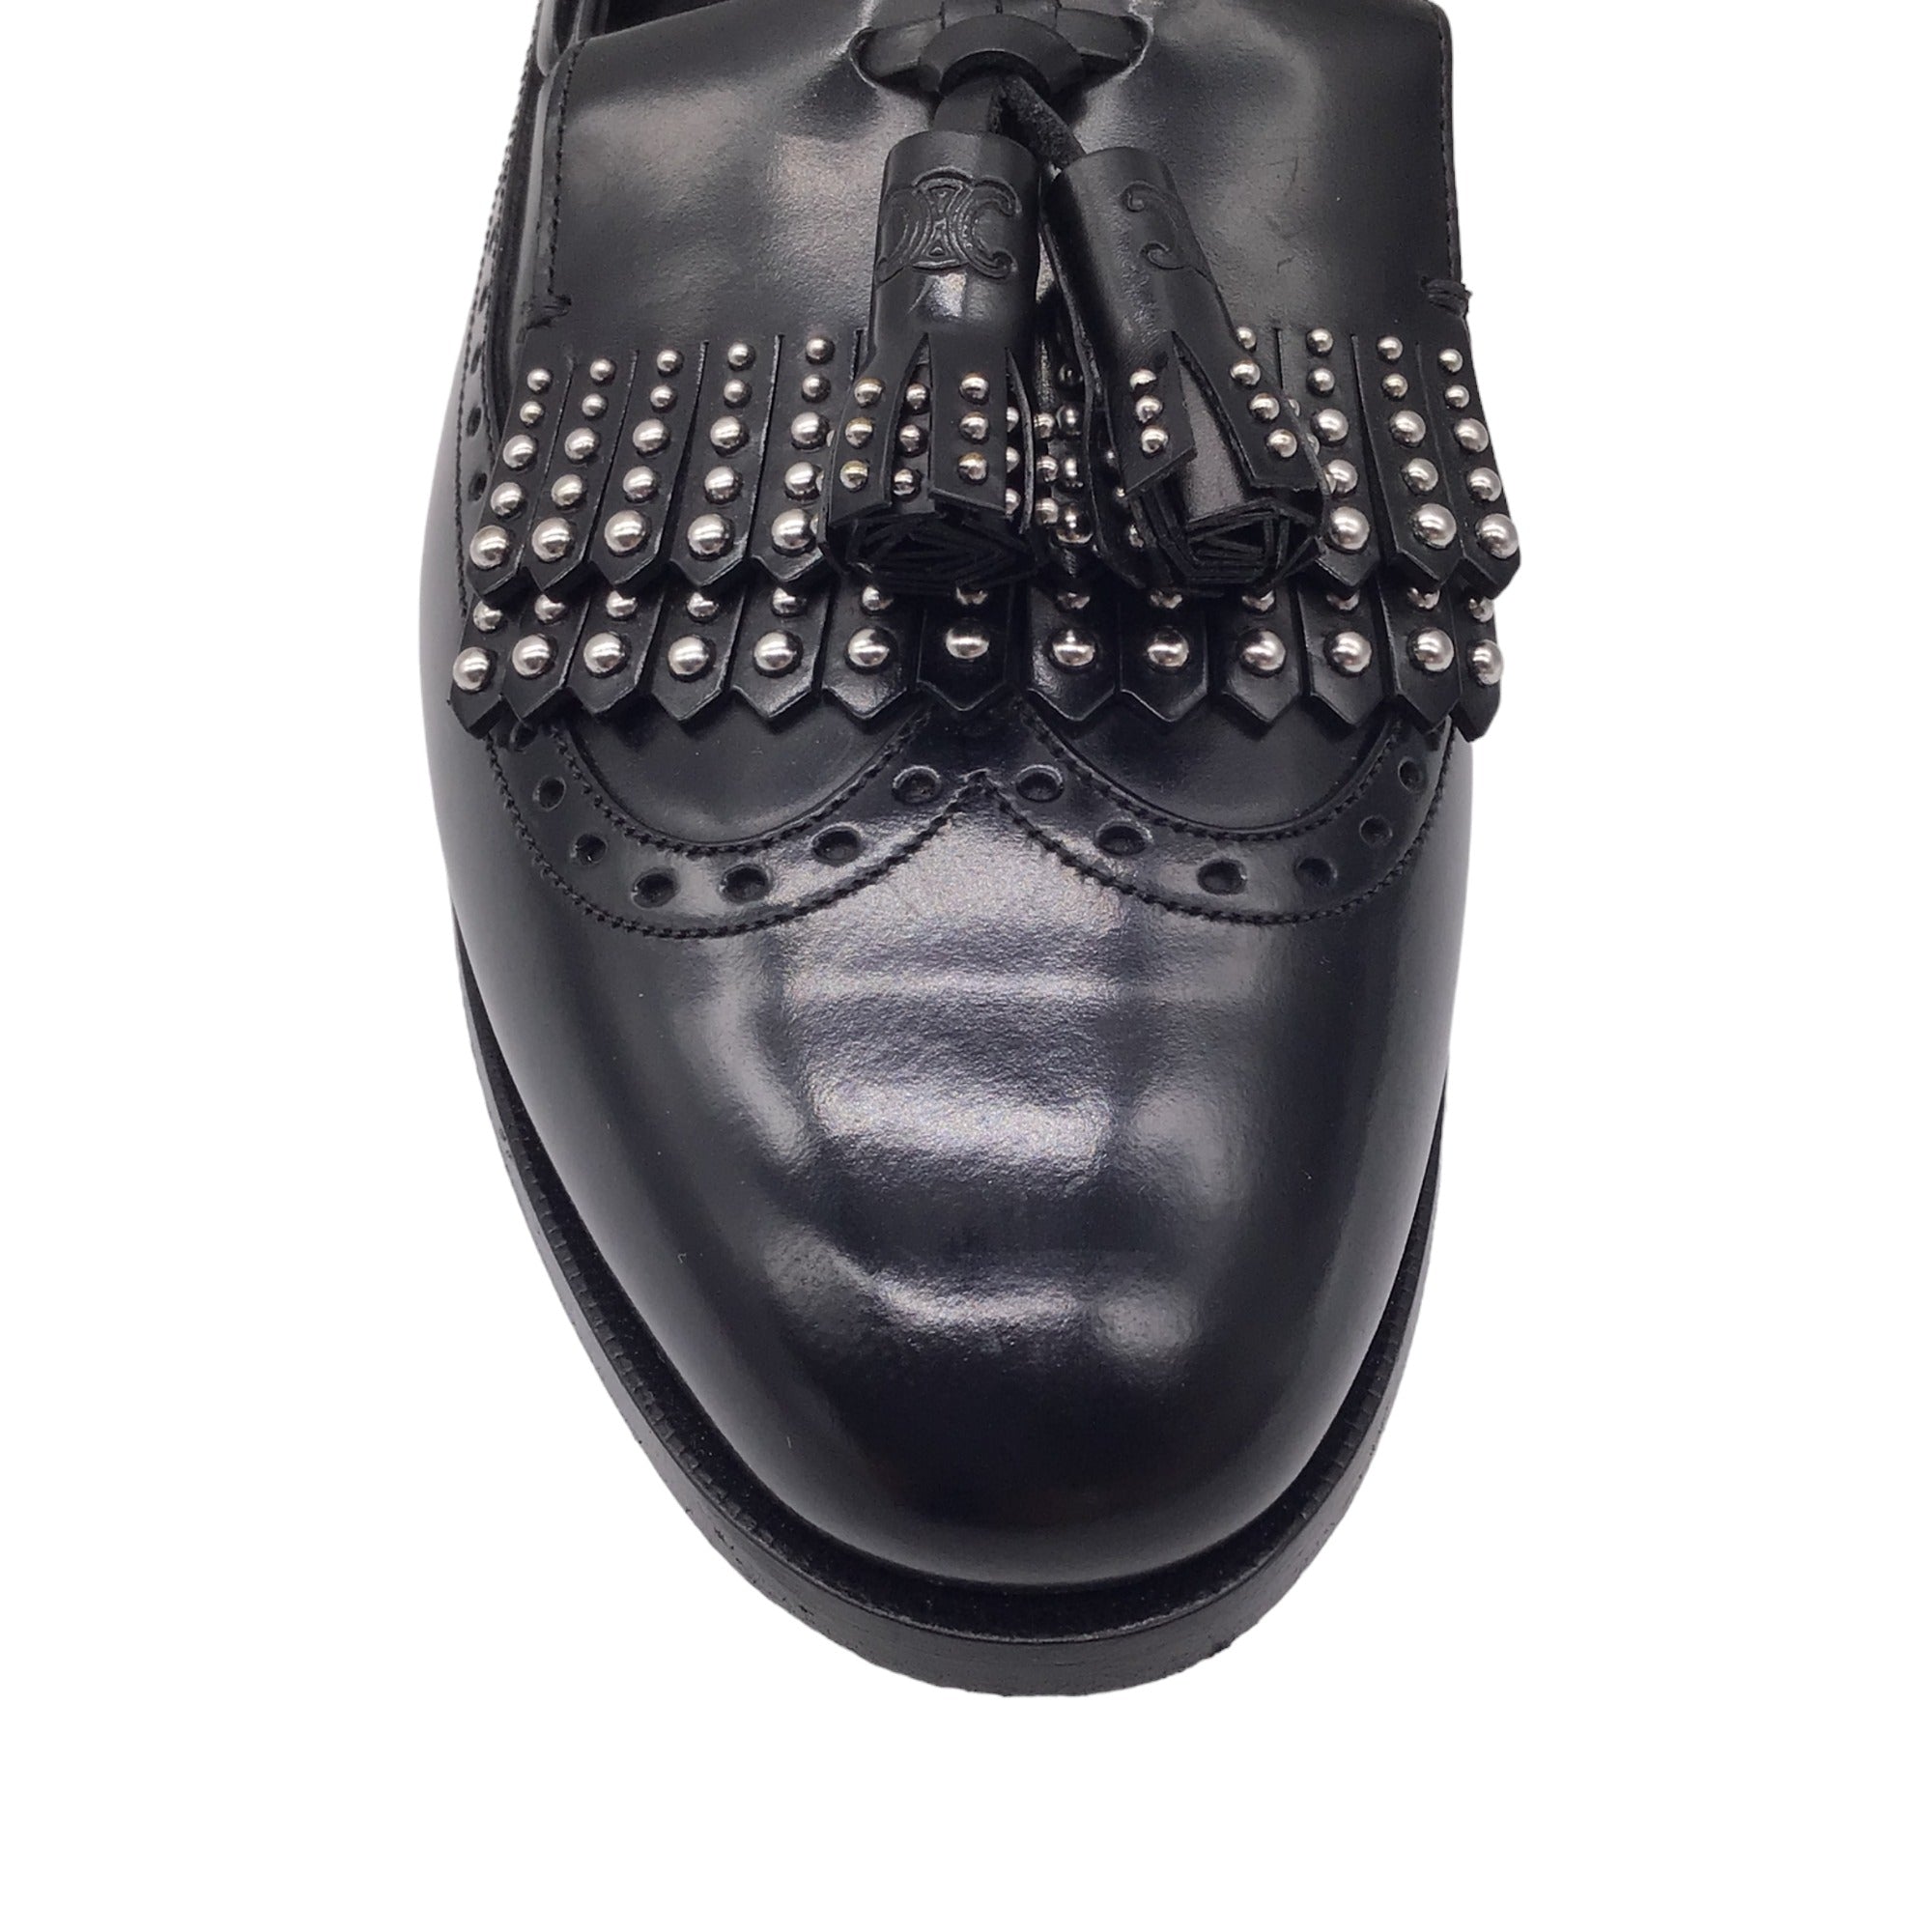 Celine Black / Silver Studded Tassel Detail Oxford Loafers / Flats